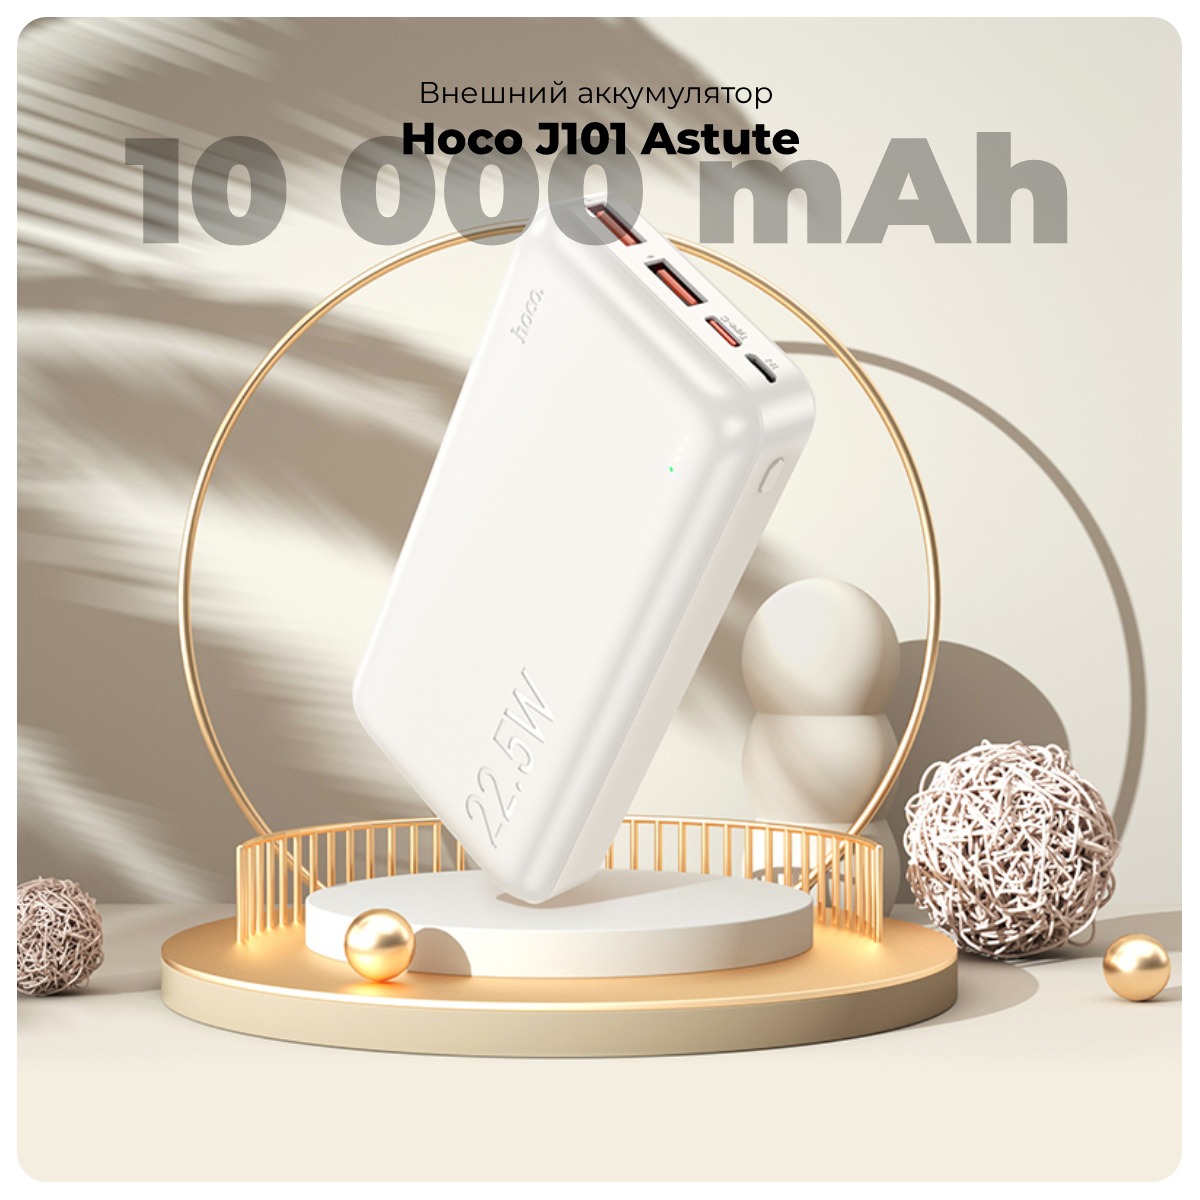 Hoco-J101-Astute-01